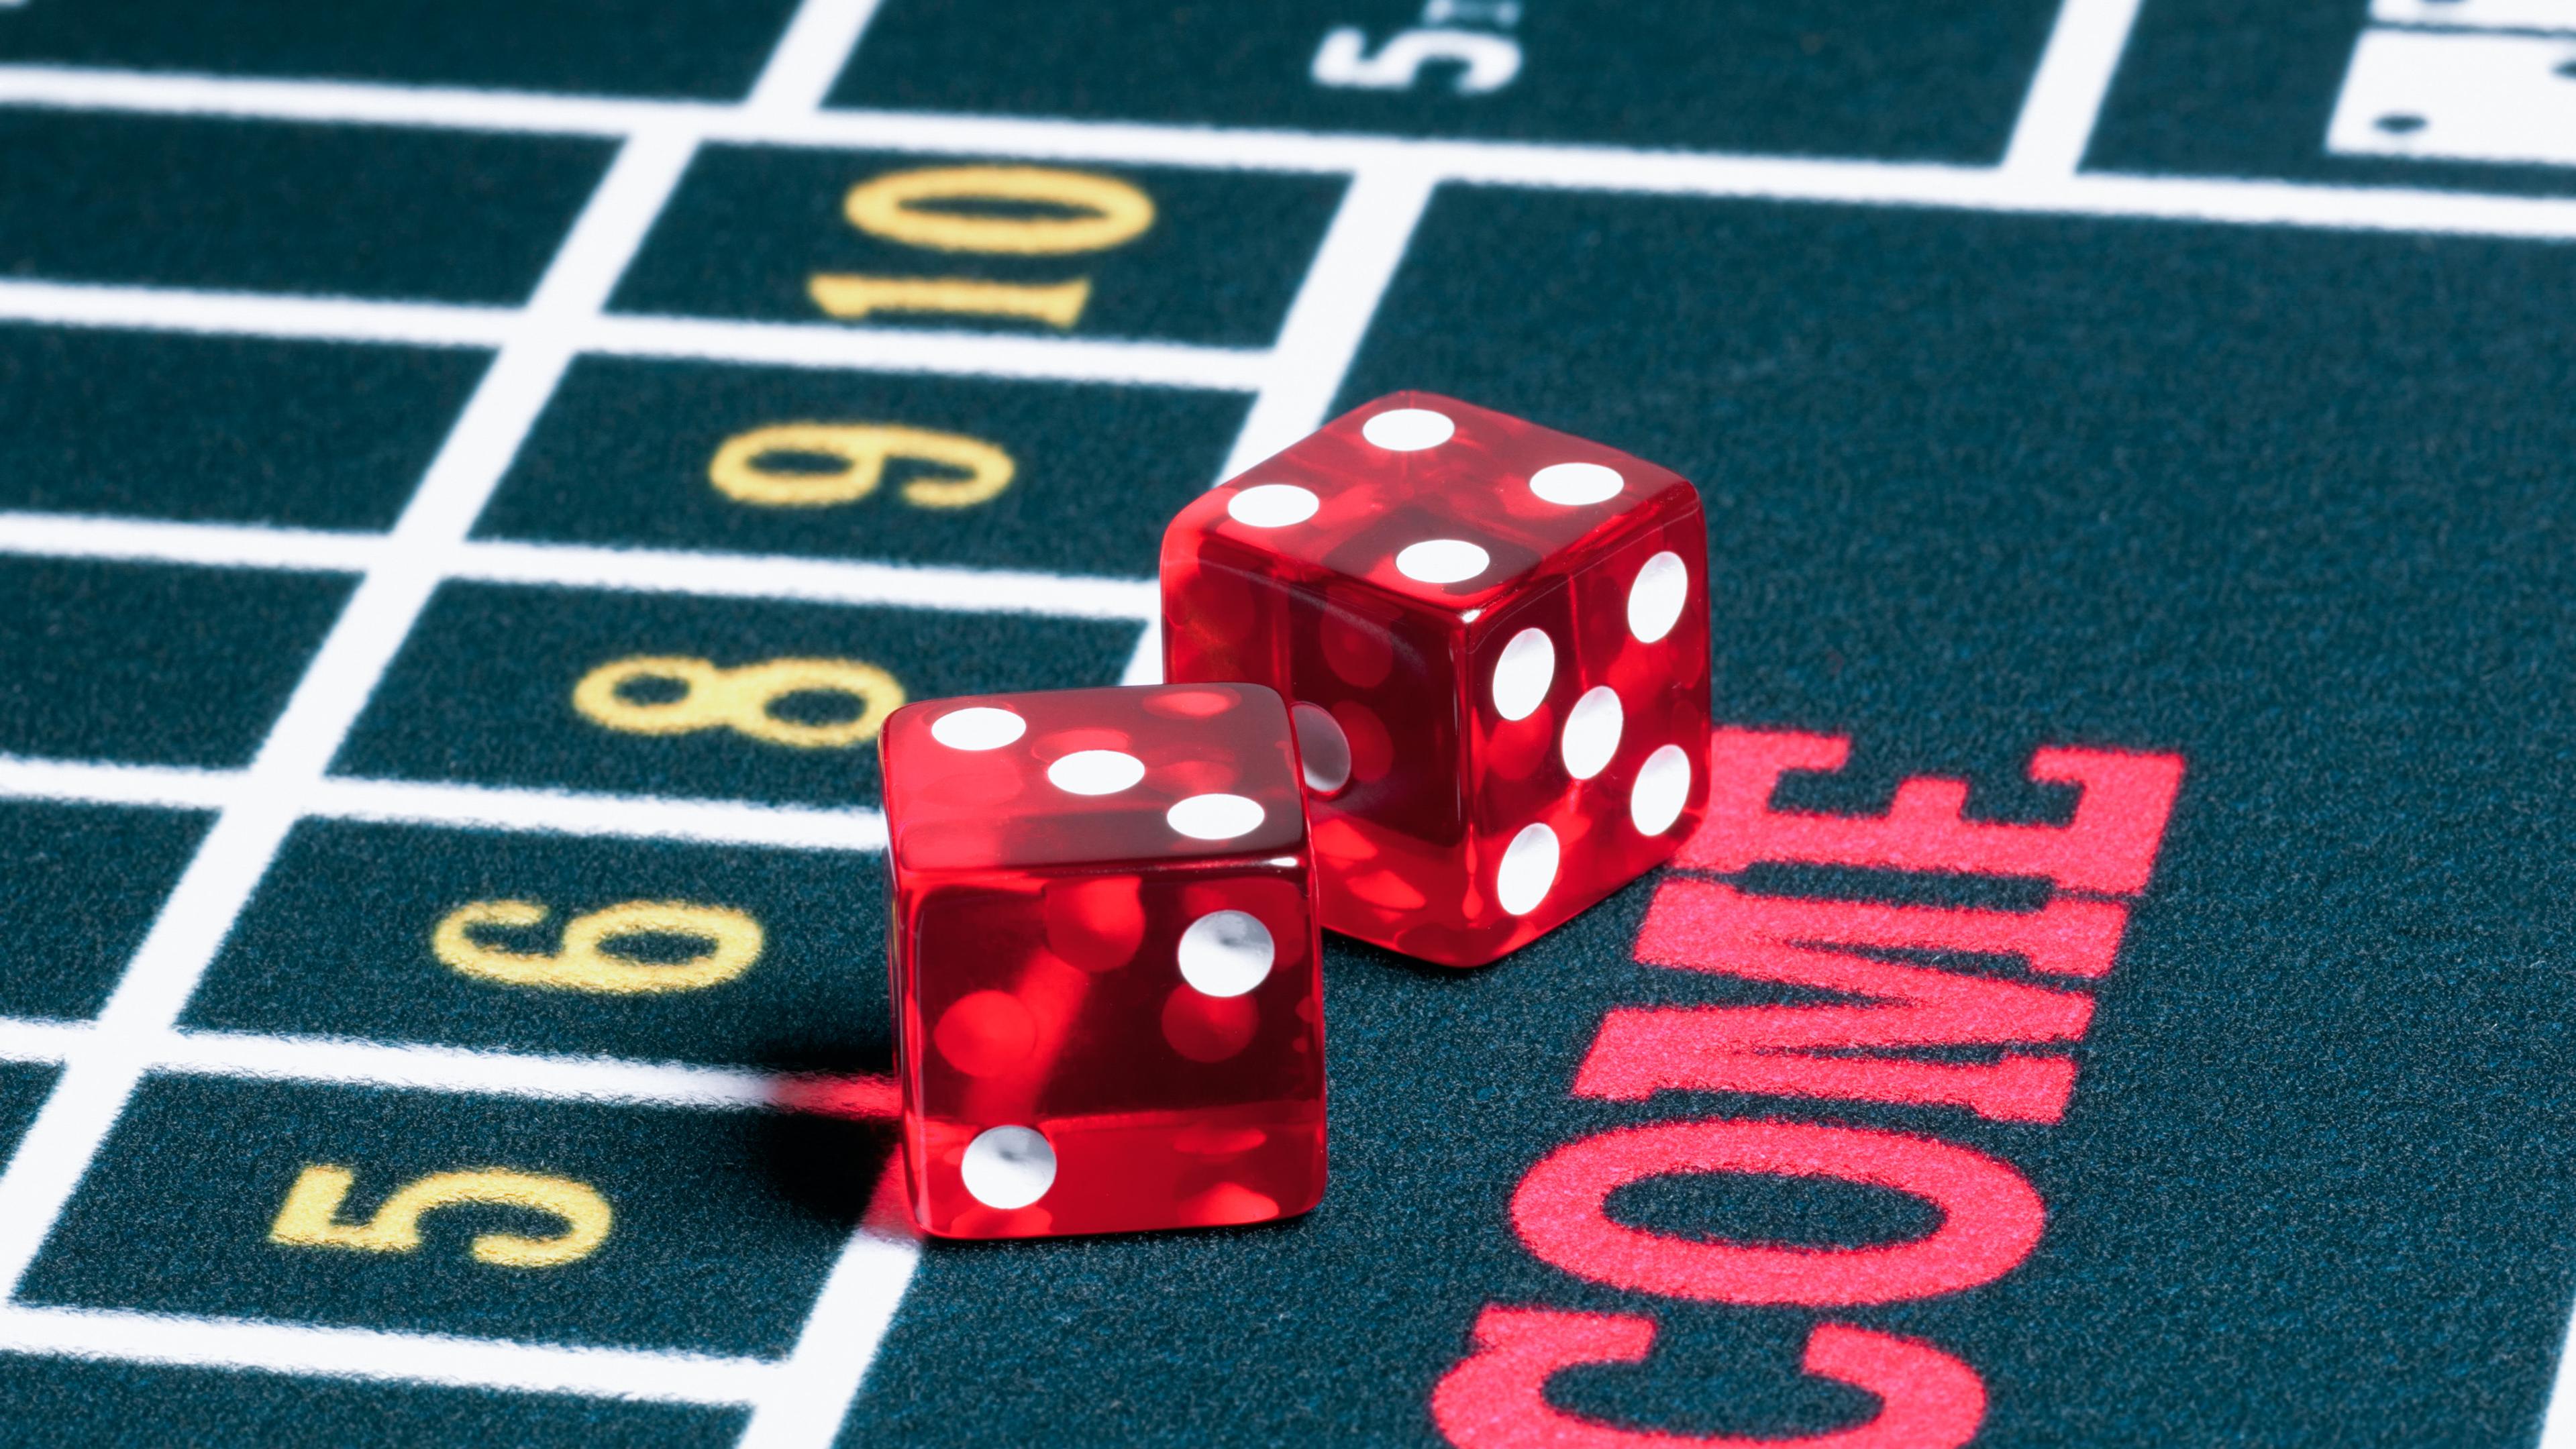 På billedet ses et udsnit af et kasinobord. På bordet er to røde terninger. Den ene terning har tallet 3 med forsiden opad, og den anden terning viser tallet 4.